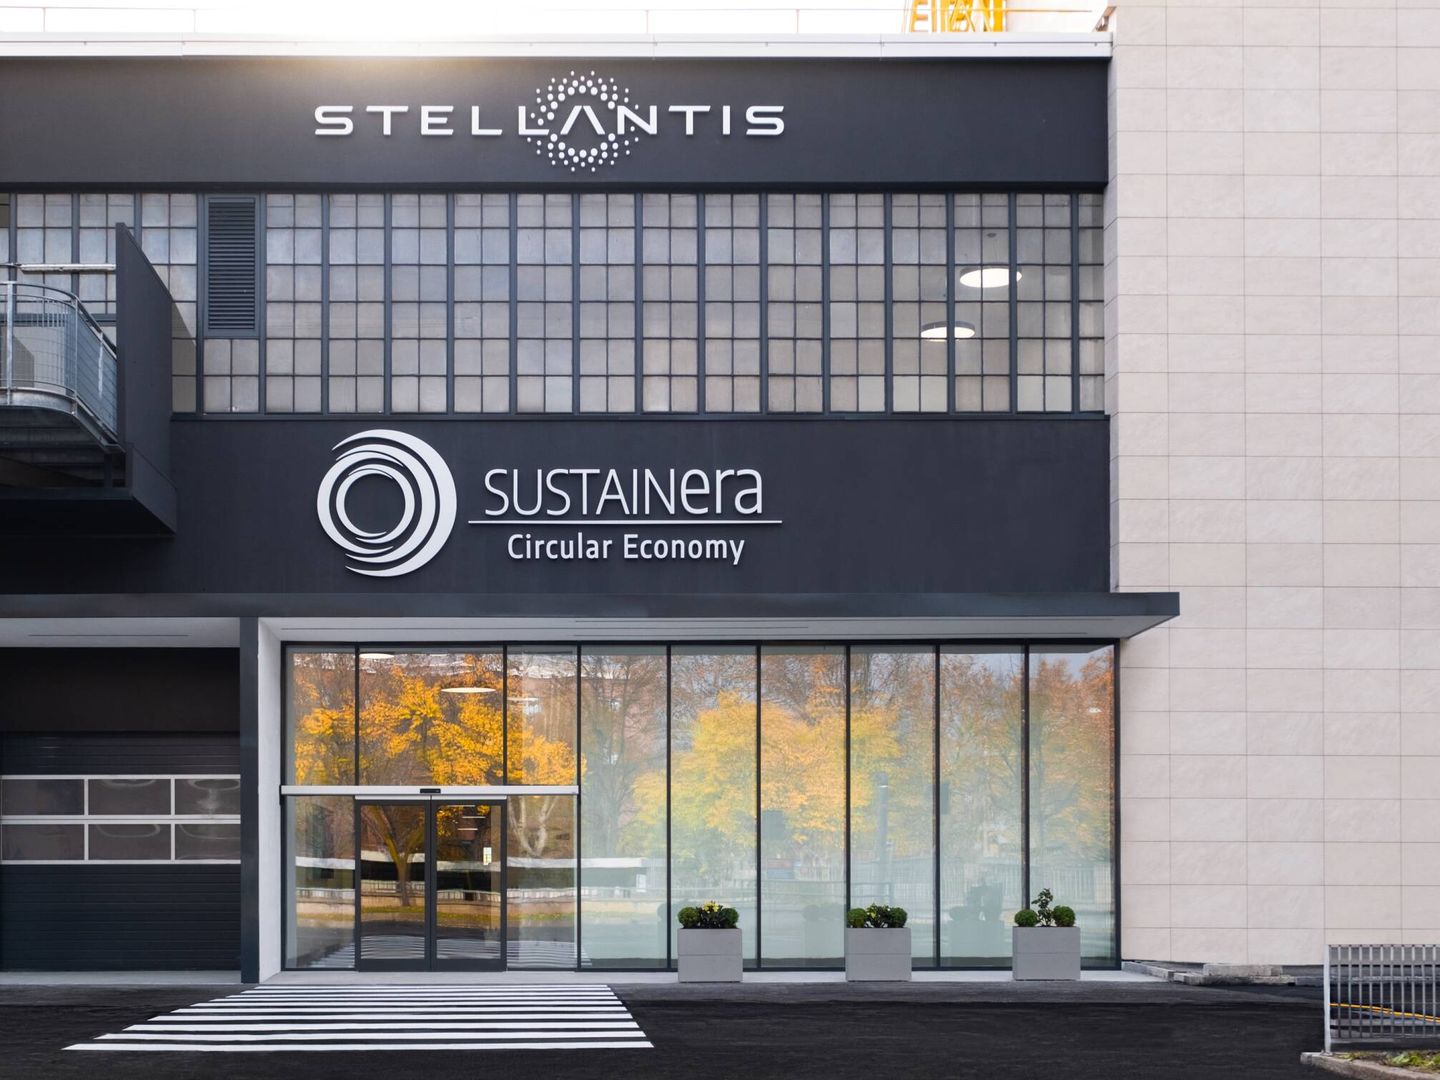 Sustainera es el nombre de la marca de economía circular del grupo Stellantis.